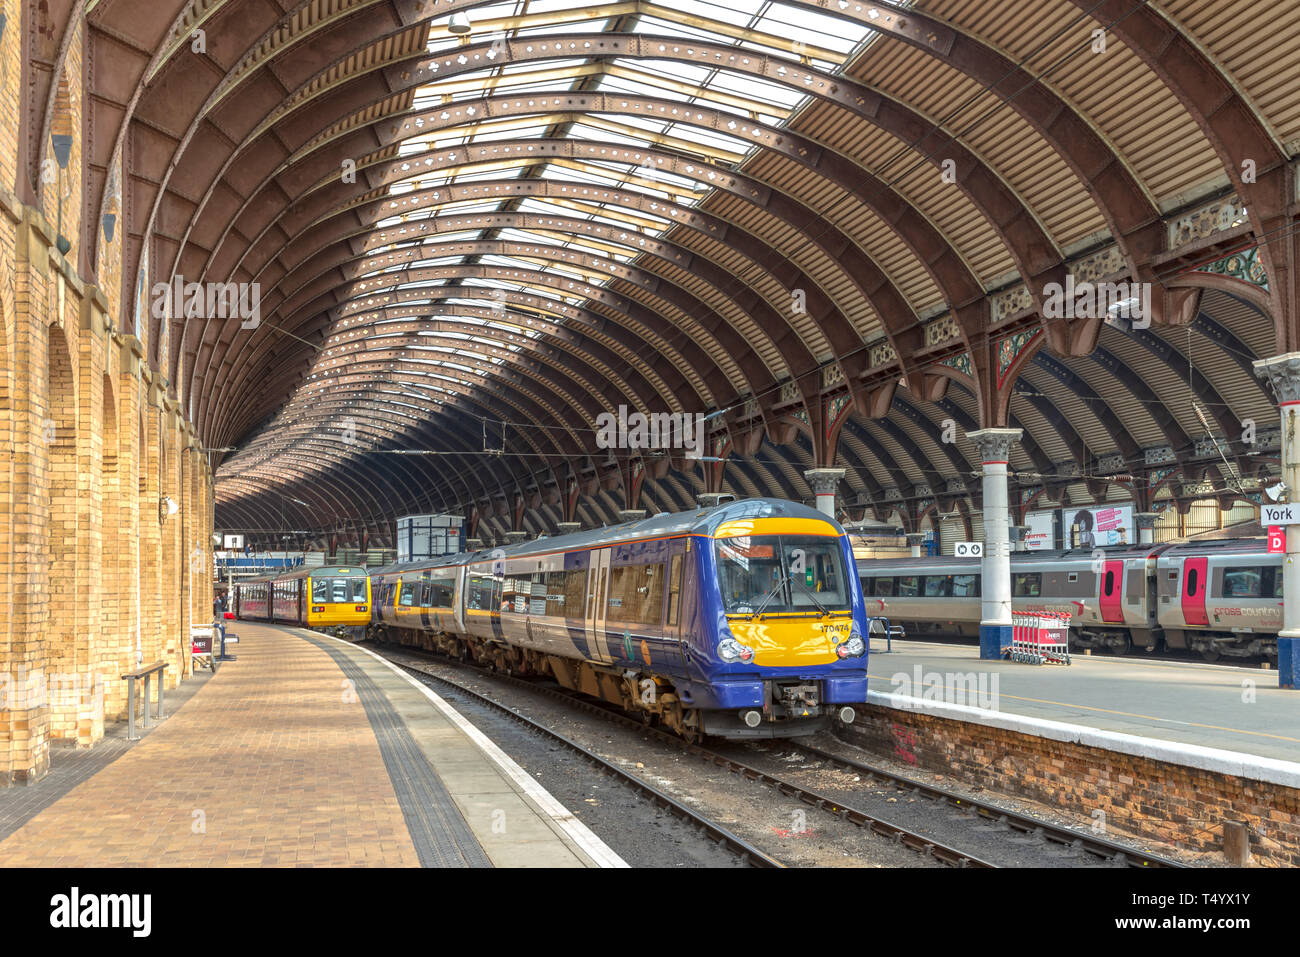 Der Bahnhof York mit Plattformen und Schienen, die nach innen. Zwei Züge warten unter einem 19. Jahrhundert Metall und Glas gebogene Vordach. Stockfoto